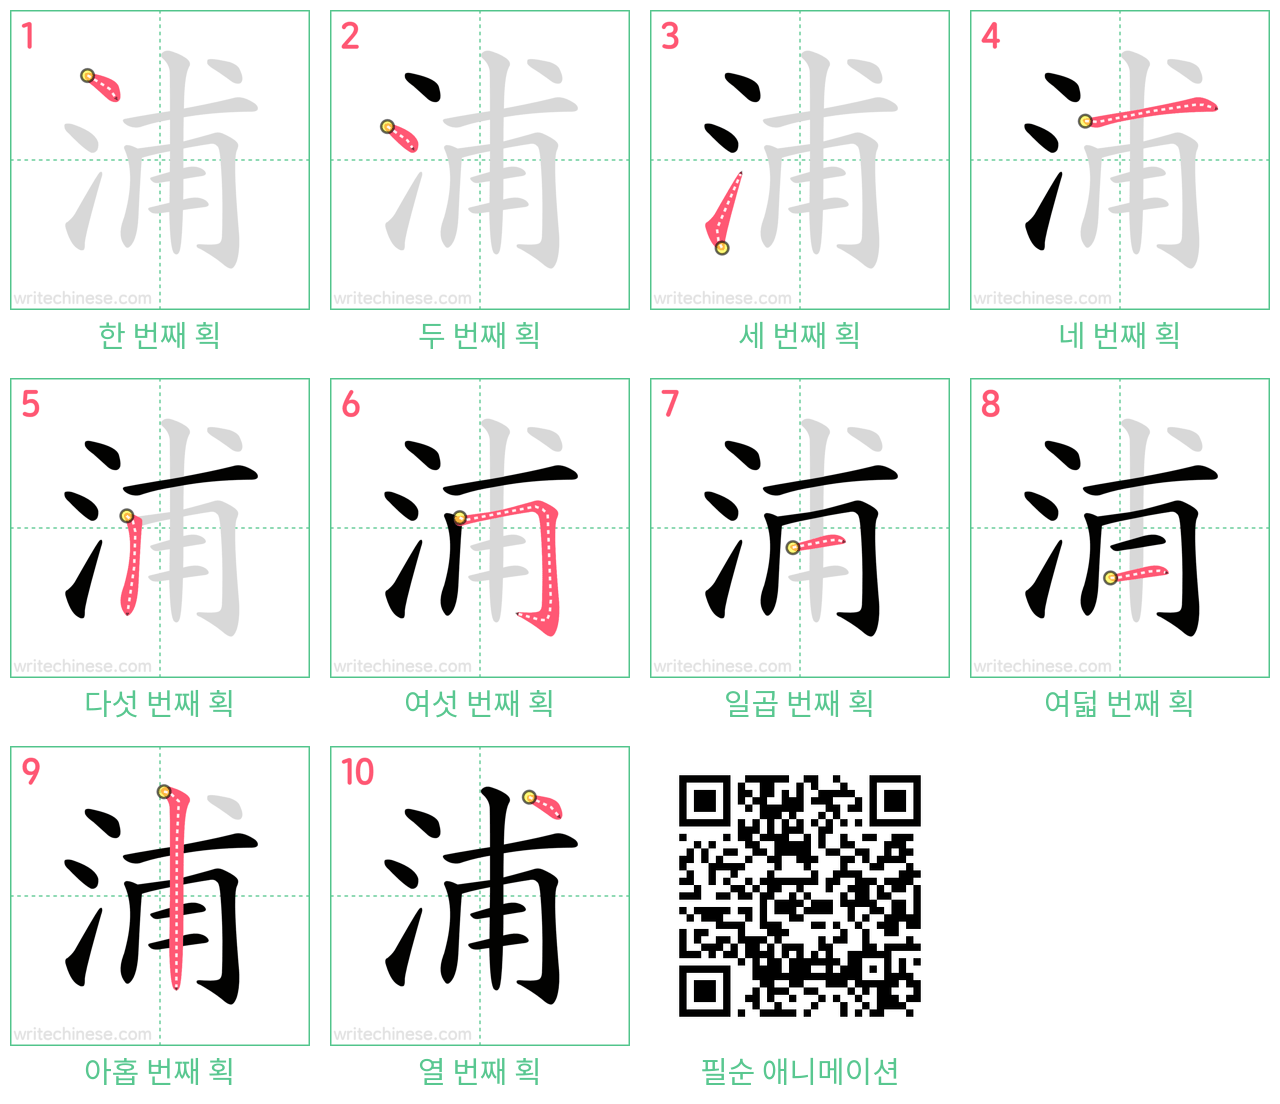 浦 step-by-step stroke order diagrams